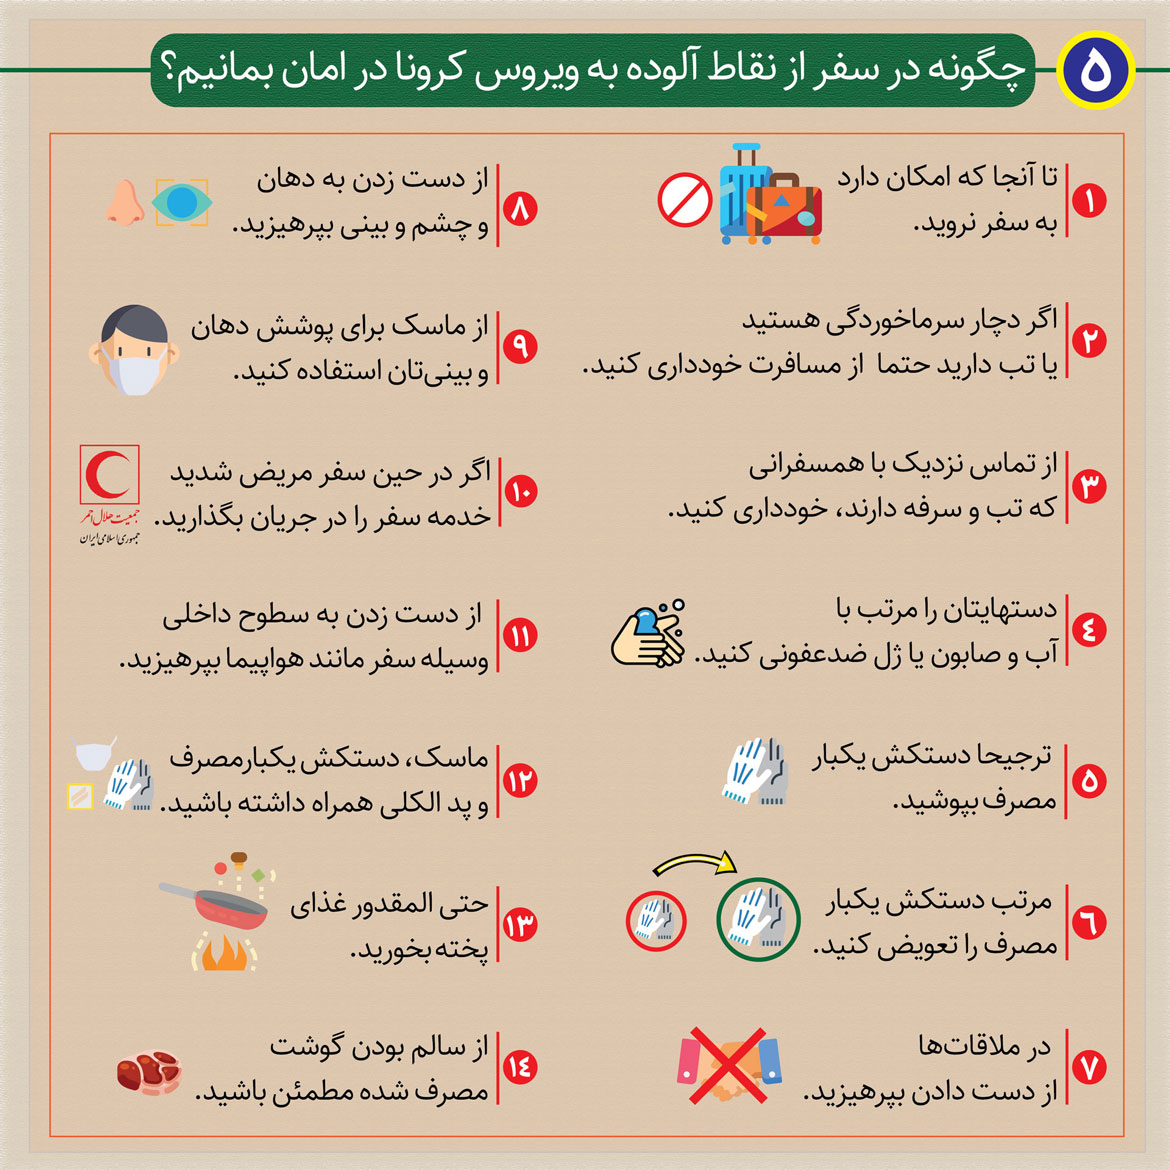 کرونا در ایران ضدعفونی با محلول وایتکس